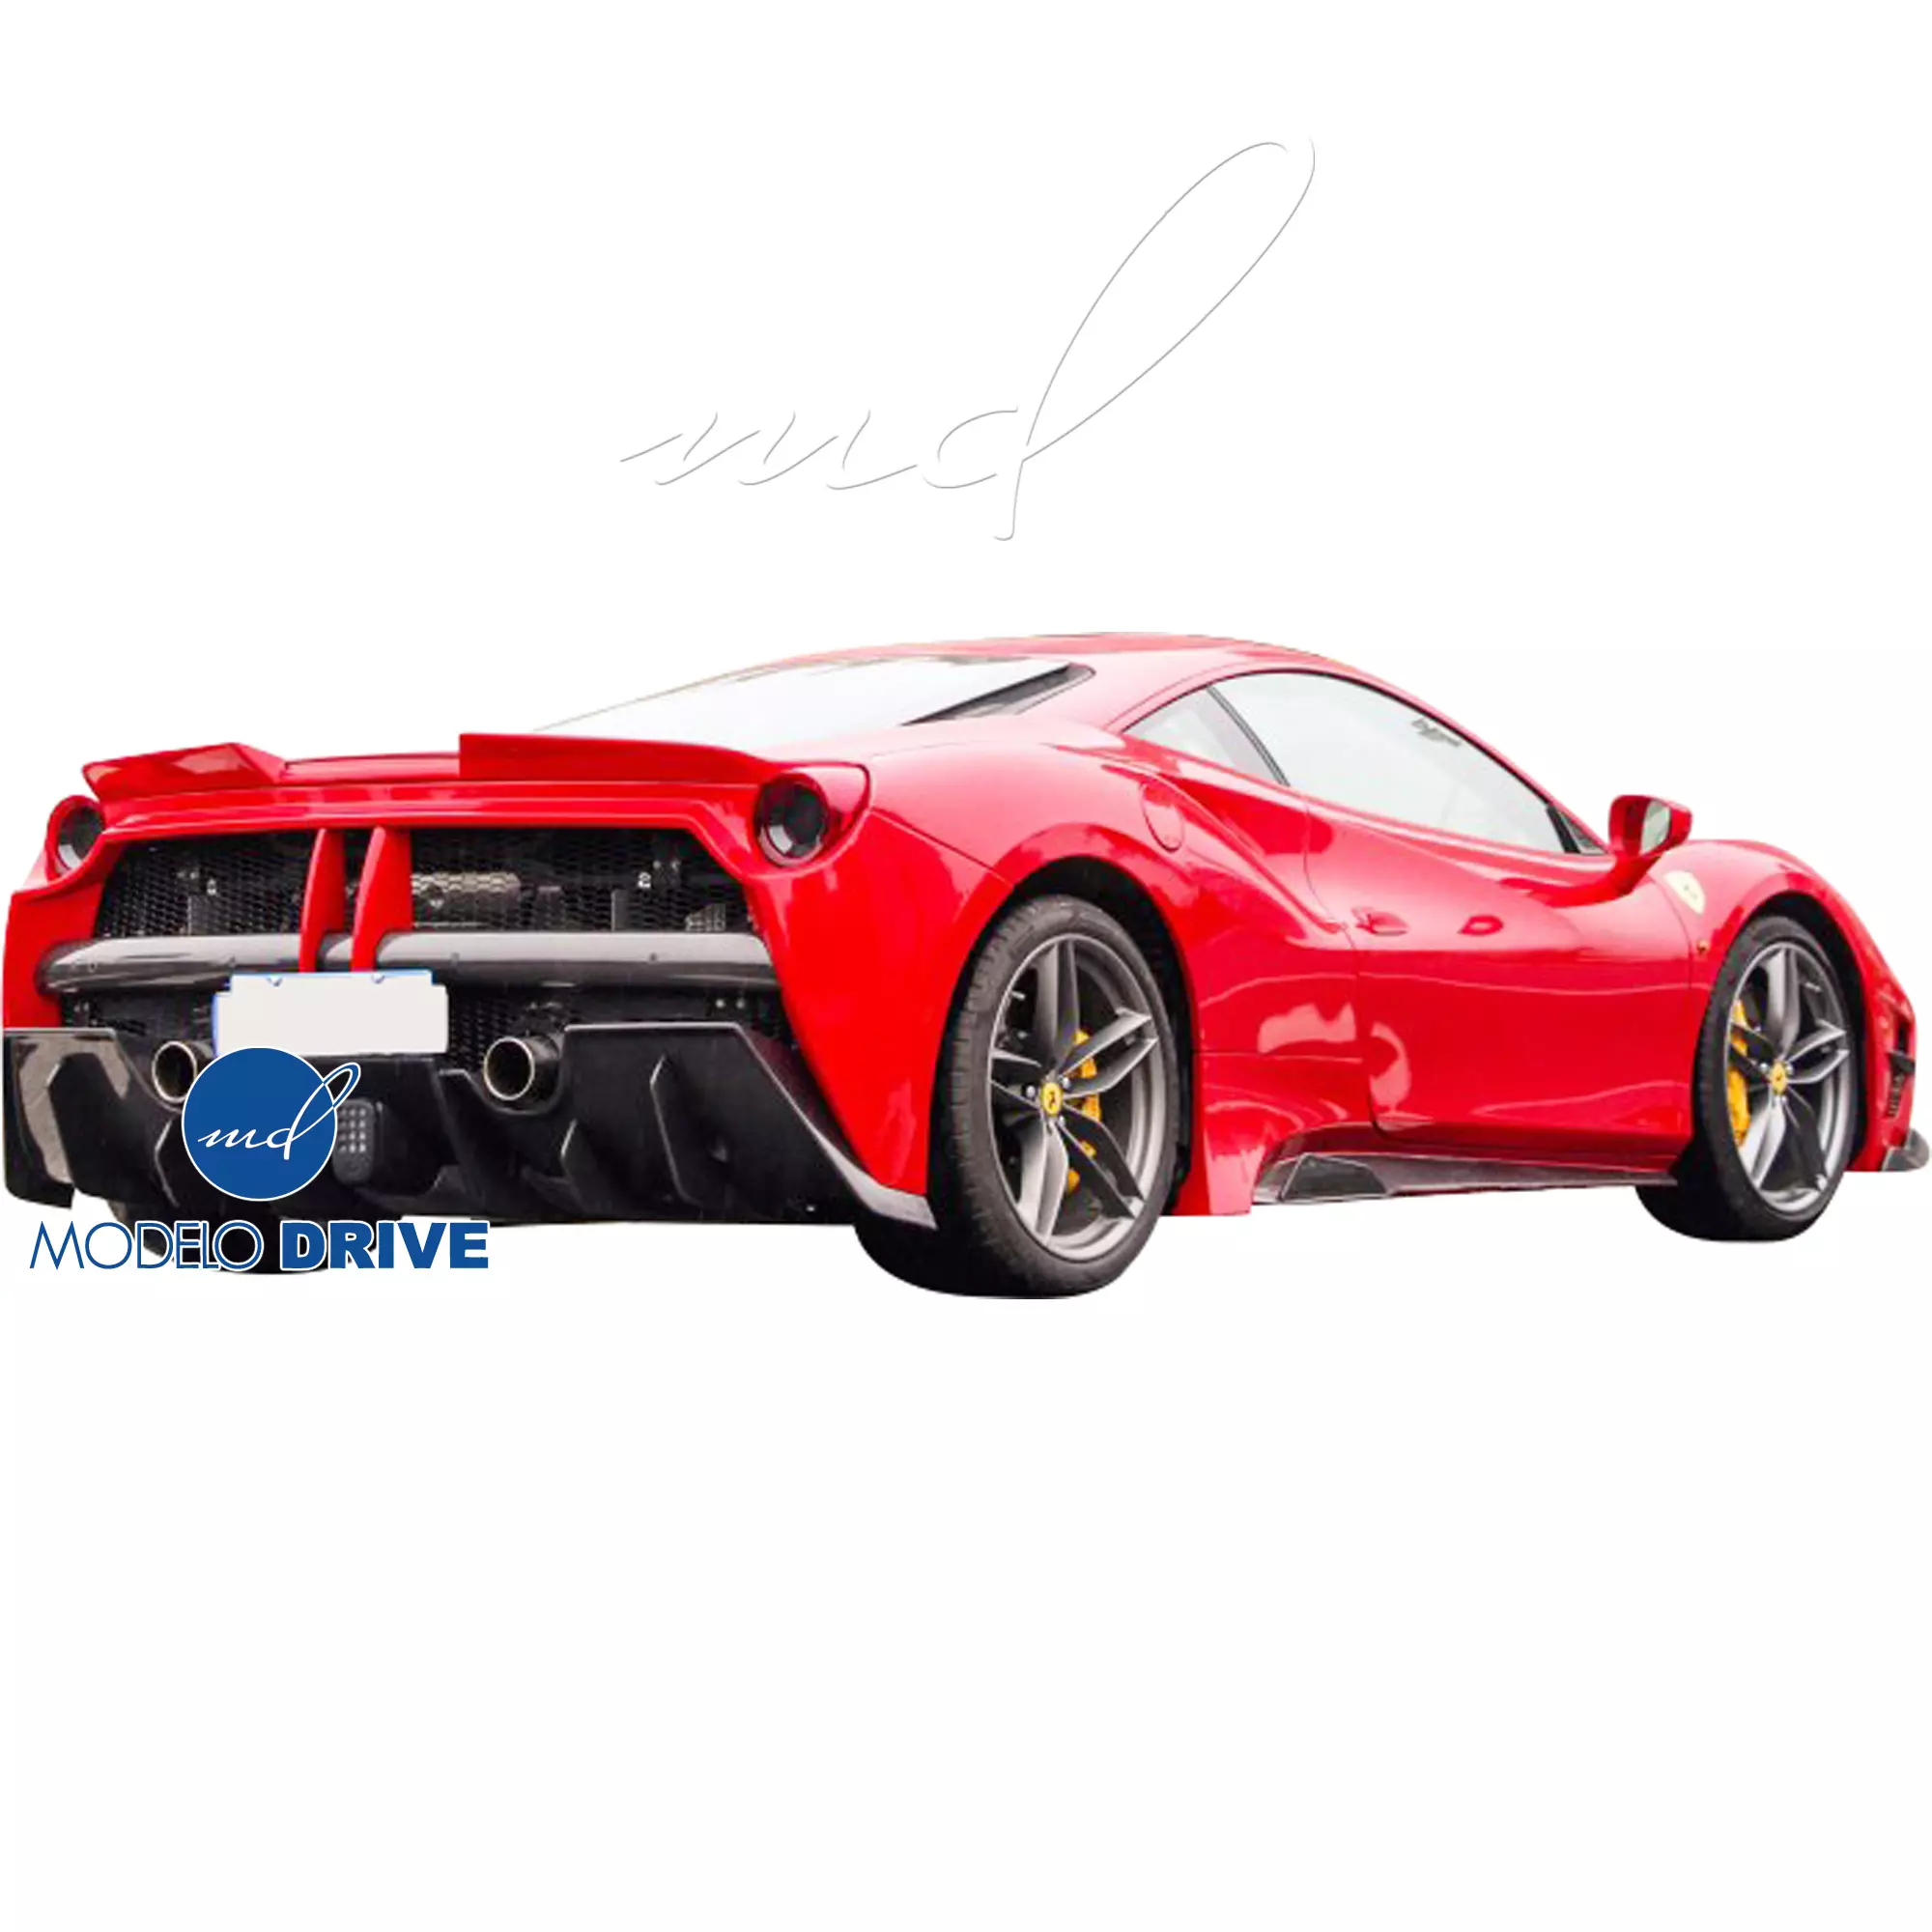 ModeloDrive Partial Carbon Fiber MDES Rear Bumper w Diffuser > Ferrari 488 GTB F142M 2016-2019 - Image 6